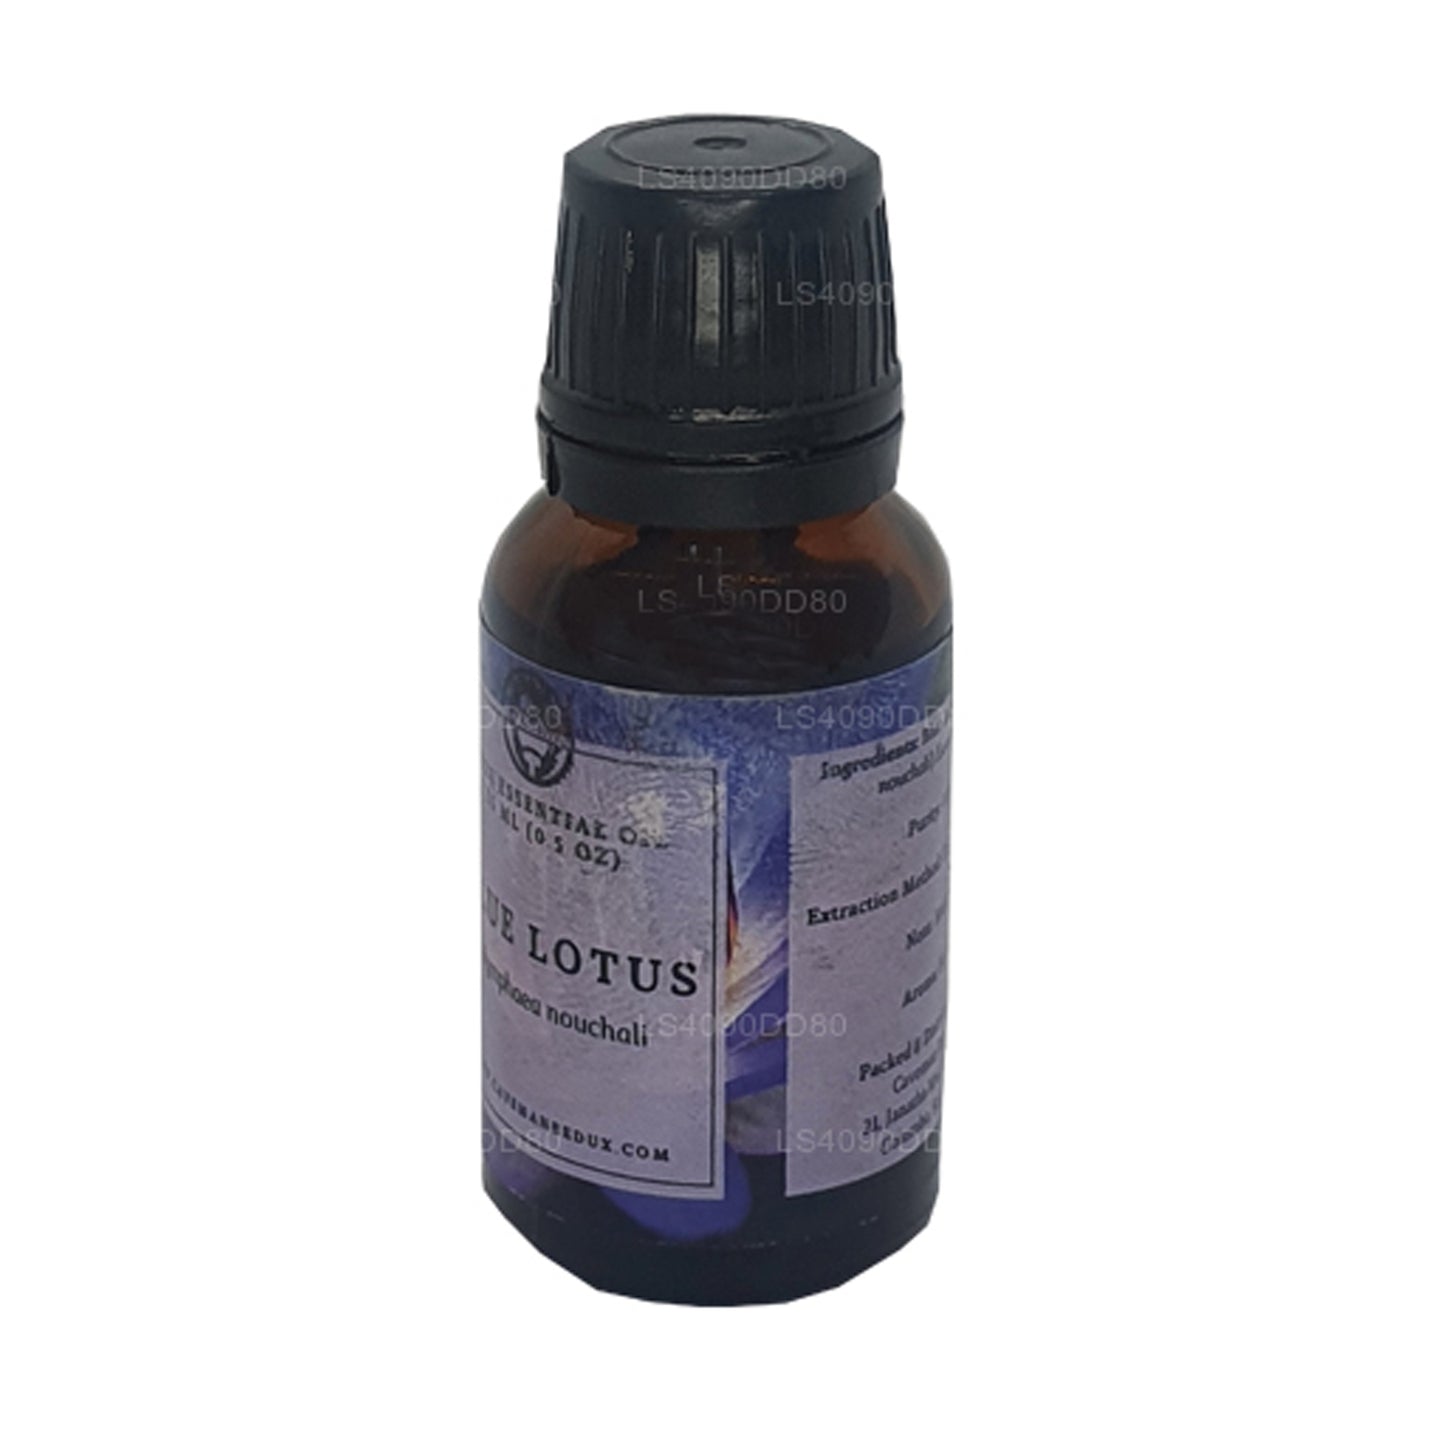 Lakpura Blue Lotus eterisk olja (absolut) (15 ml)